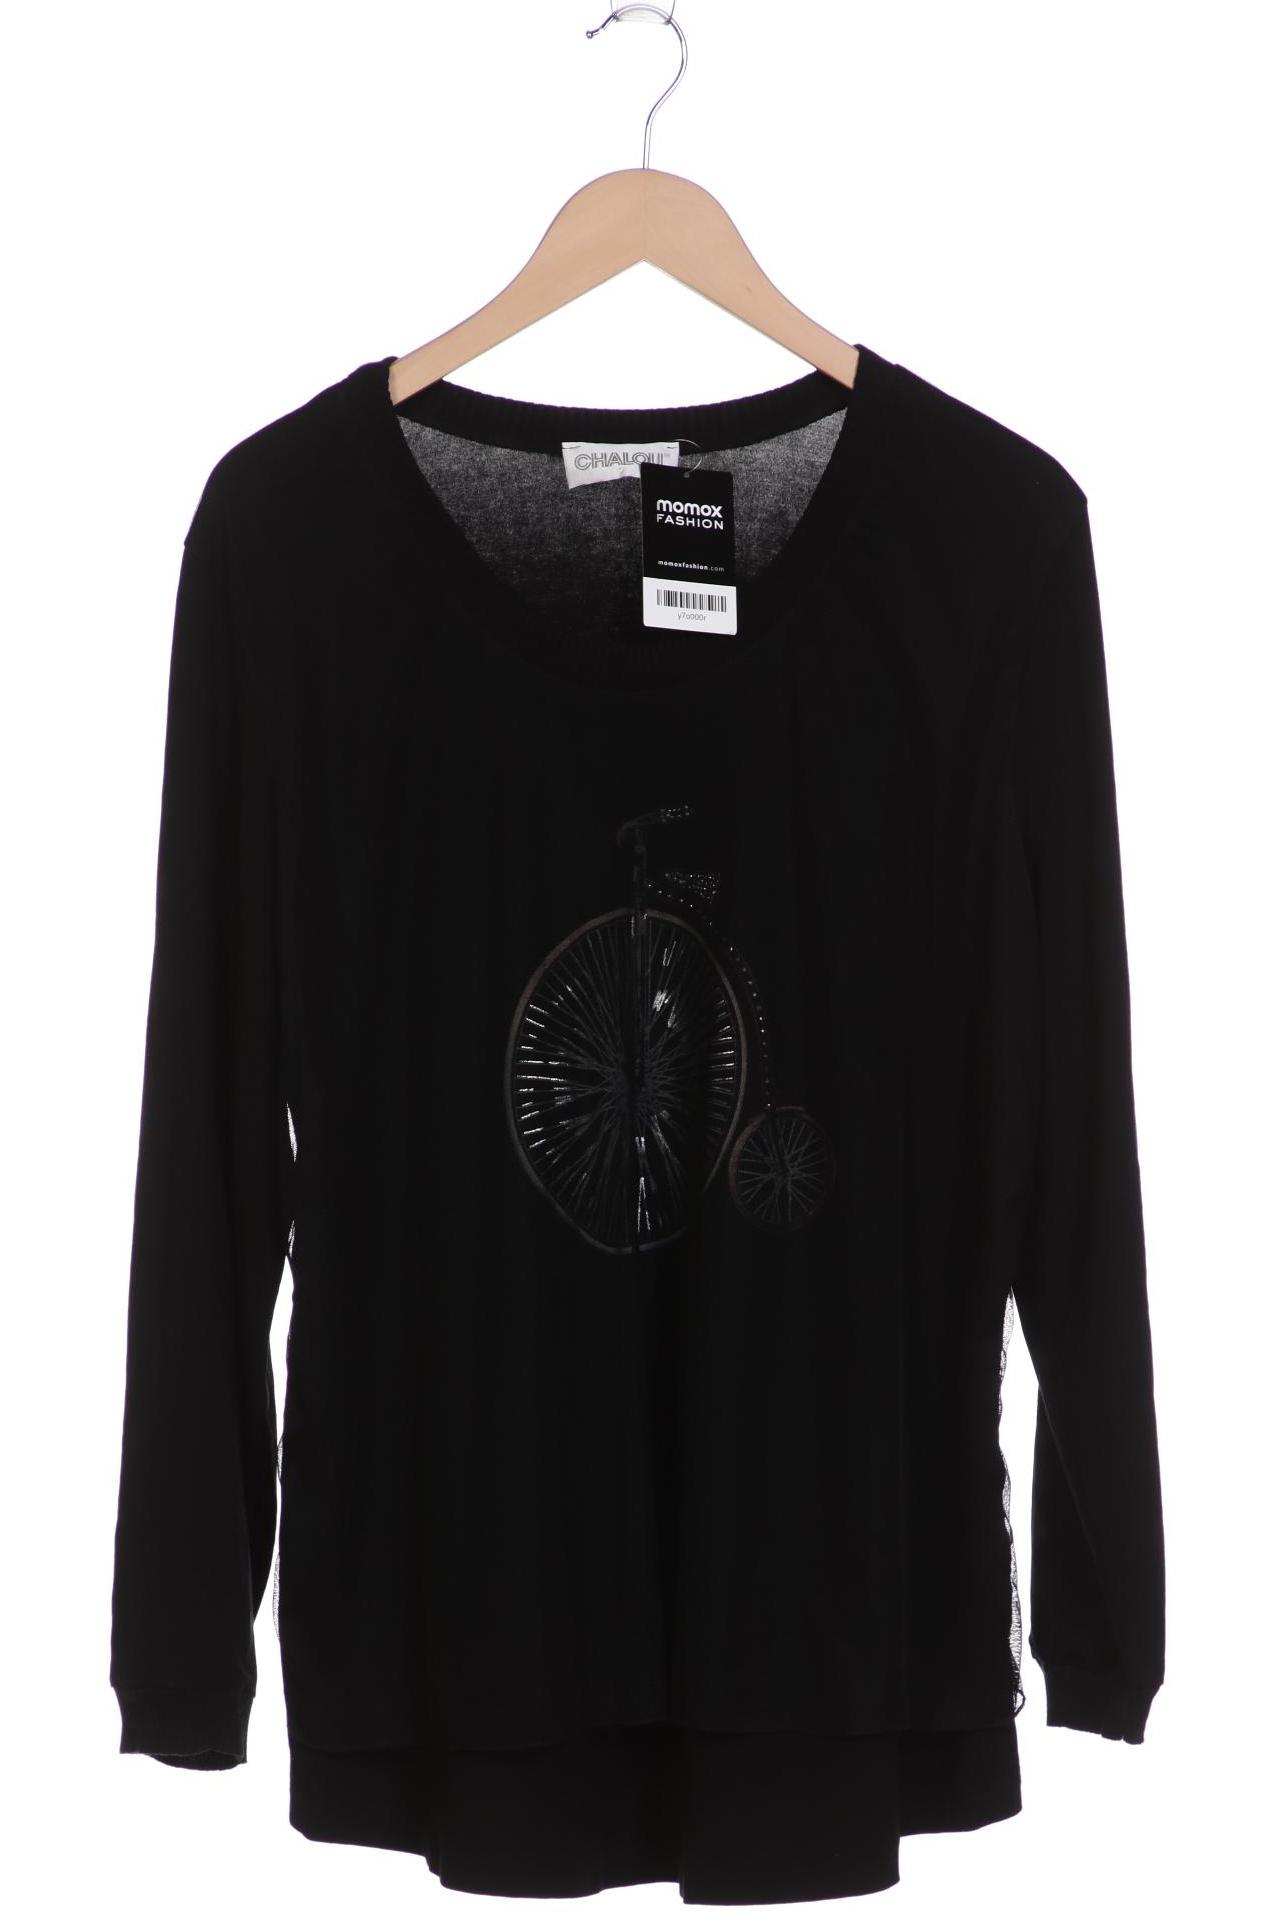 Chalou Damen Sweatshirt, schwarz, Gr. 46 von Chalou